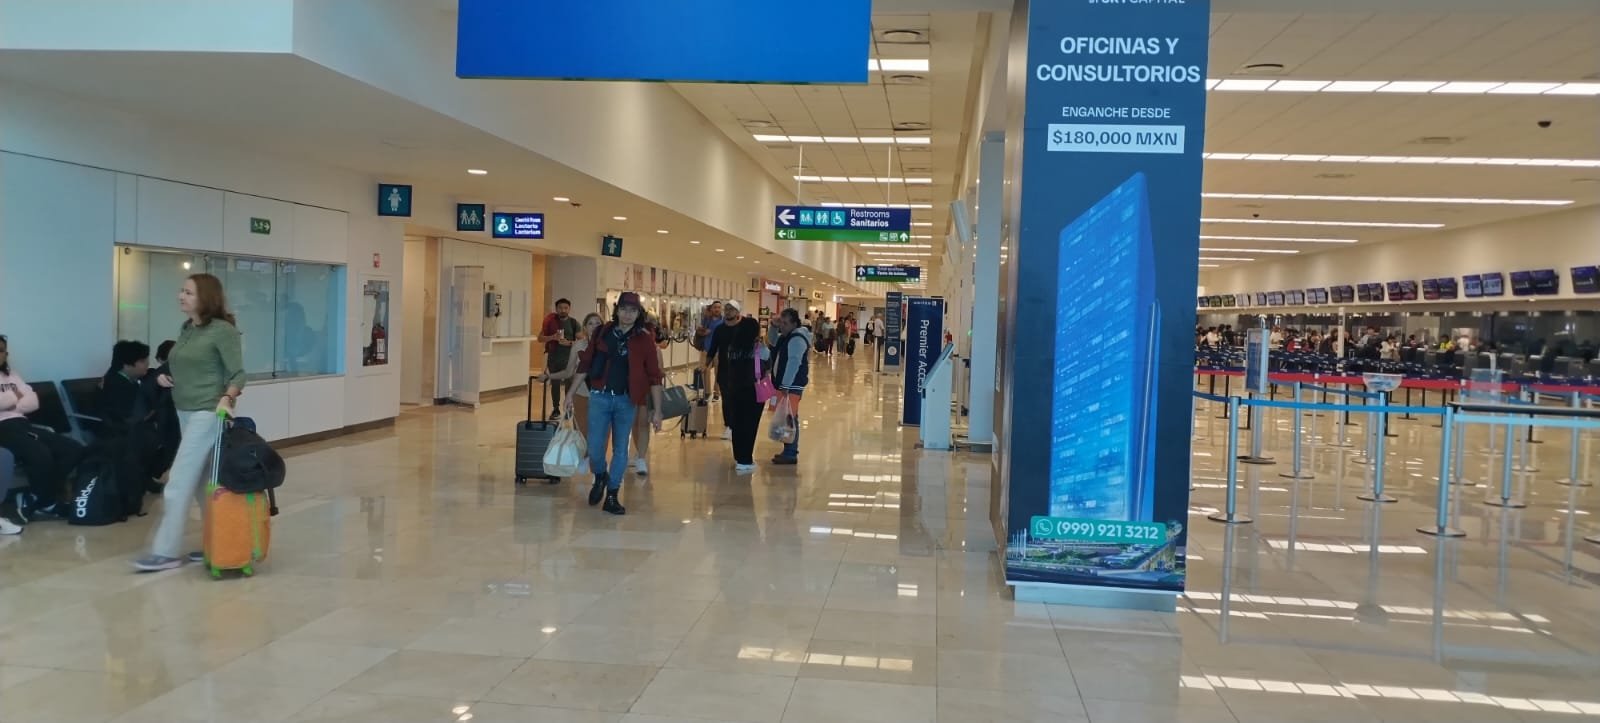 Los retrasos de vuelos en el aeropuerto de Mérida han sido mínimos